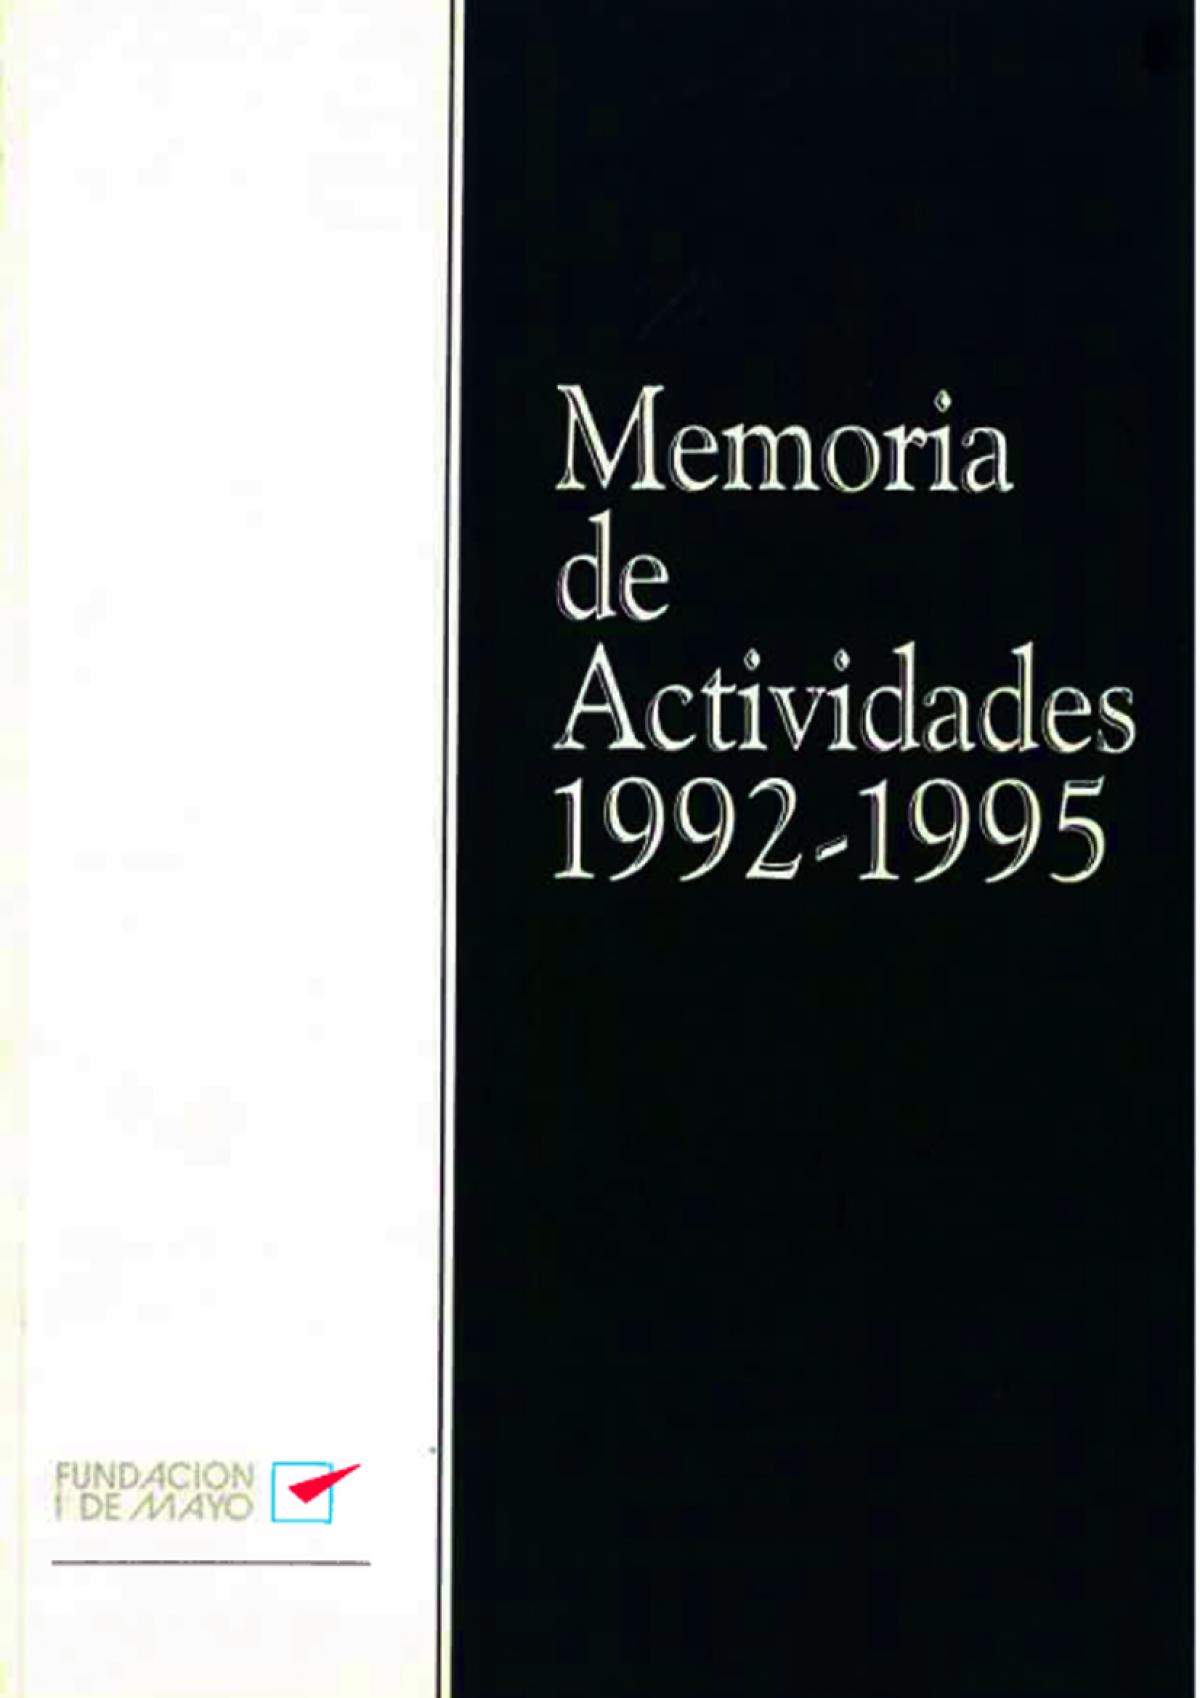 Portada Memoria 1992-1995